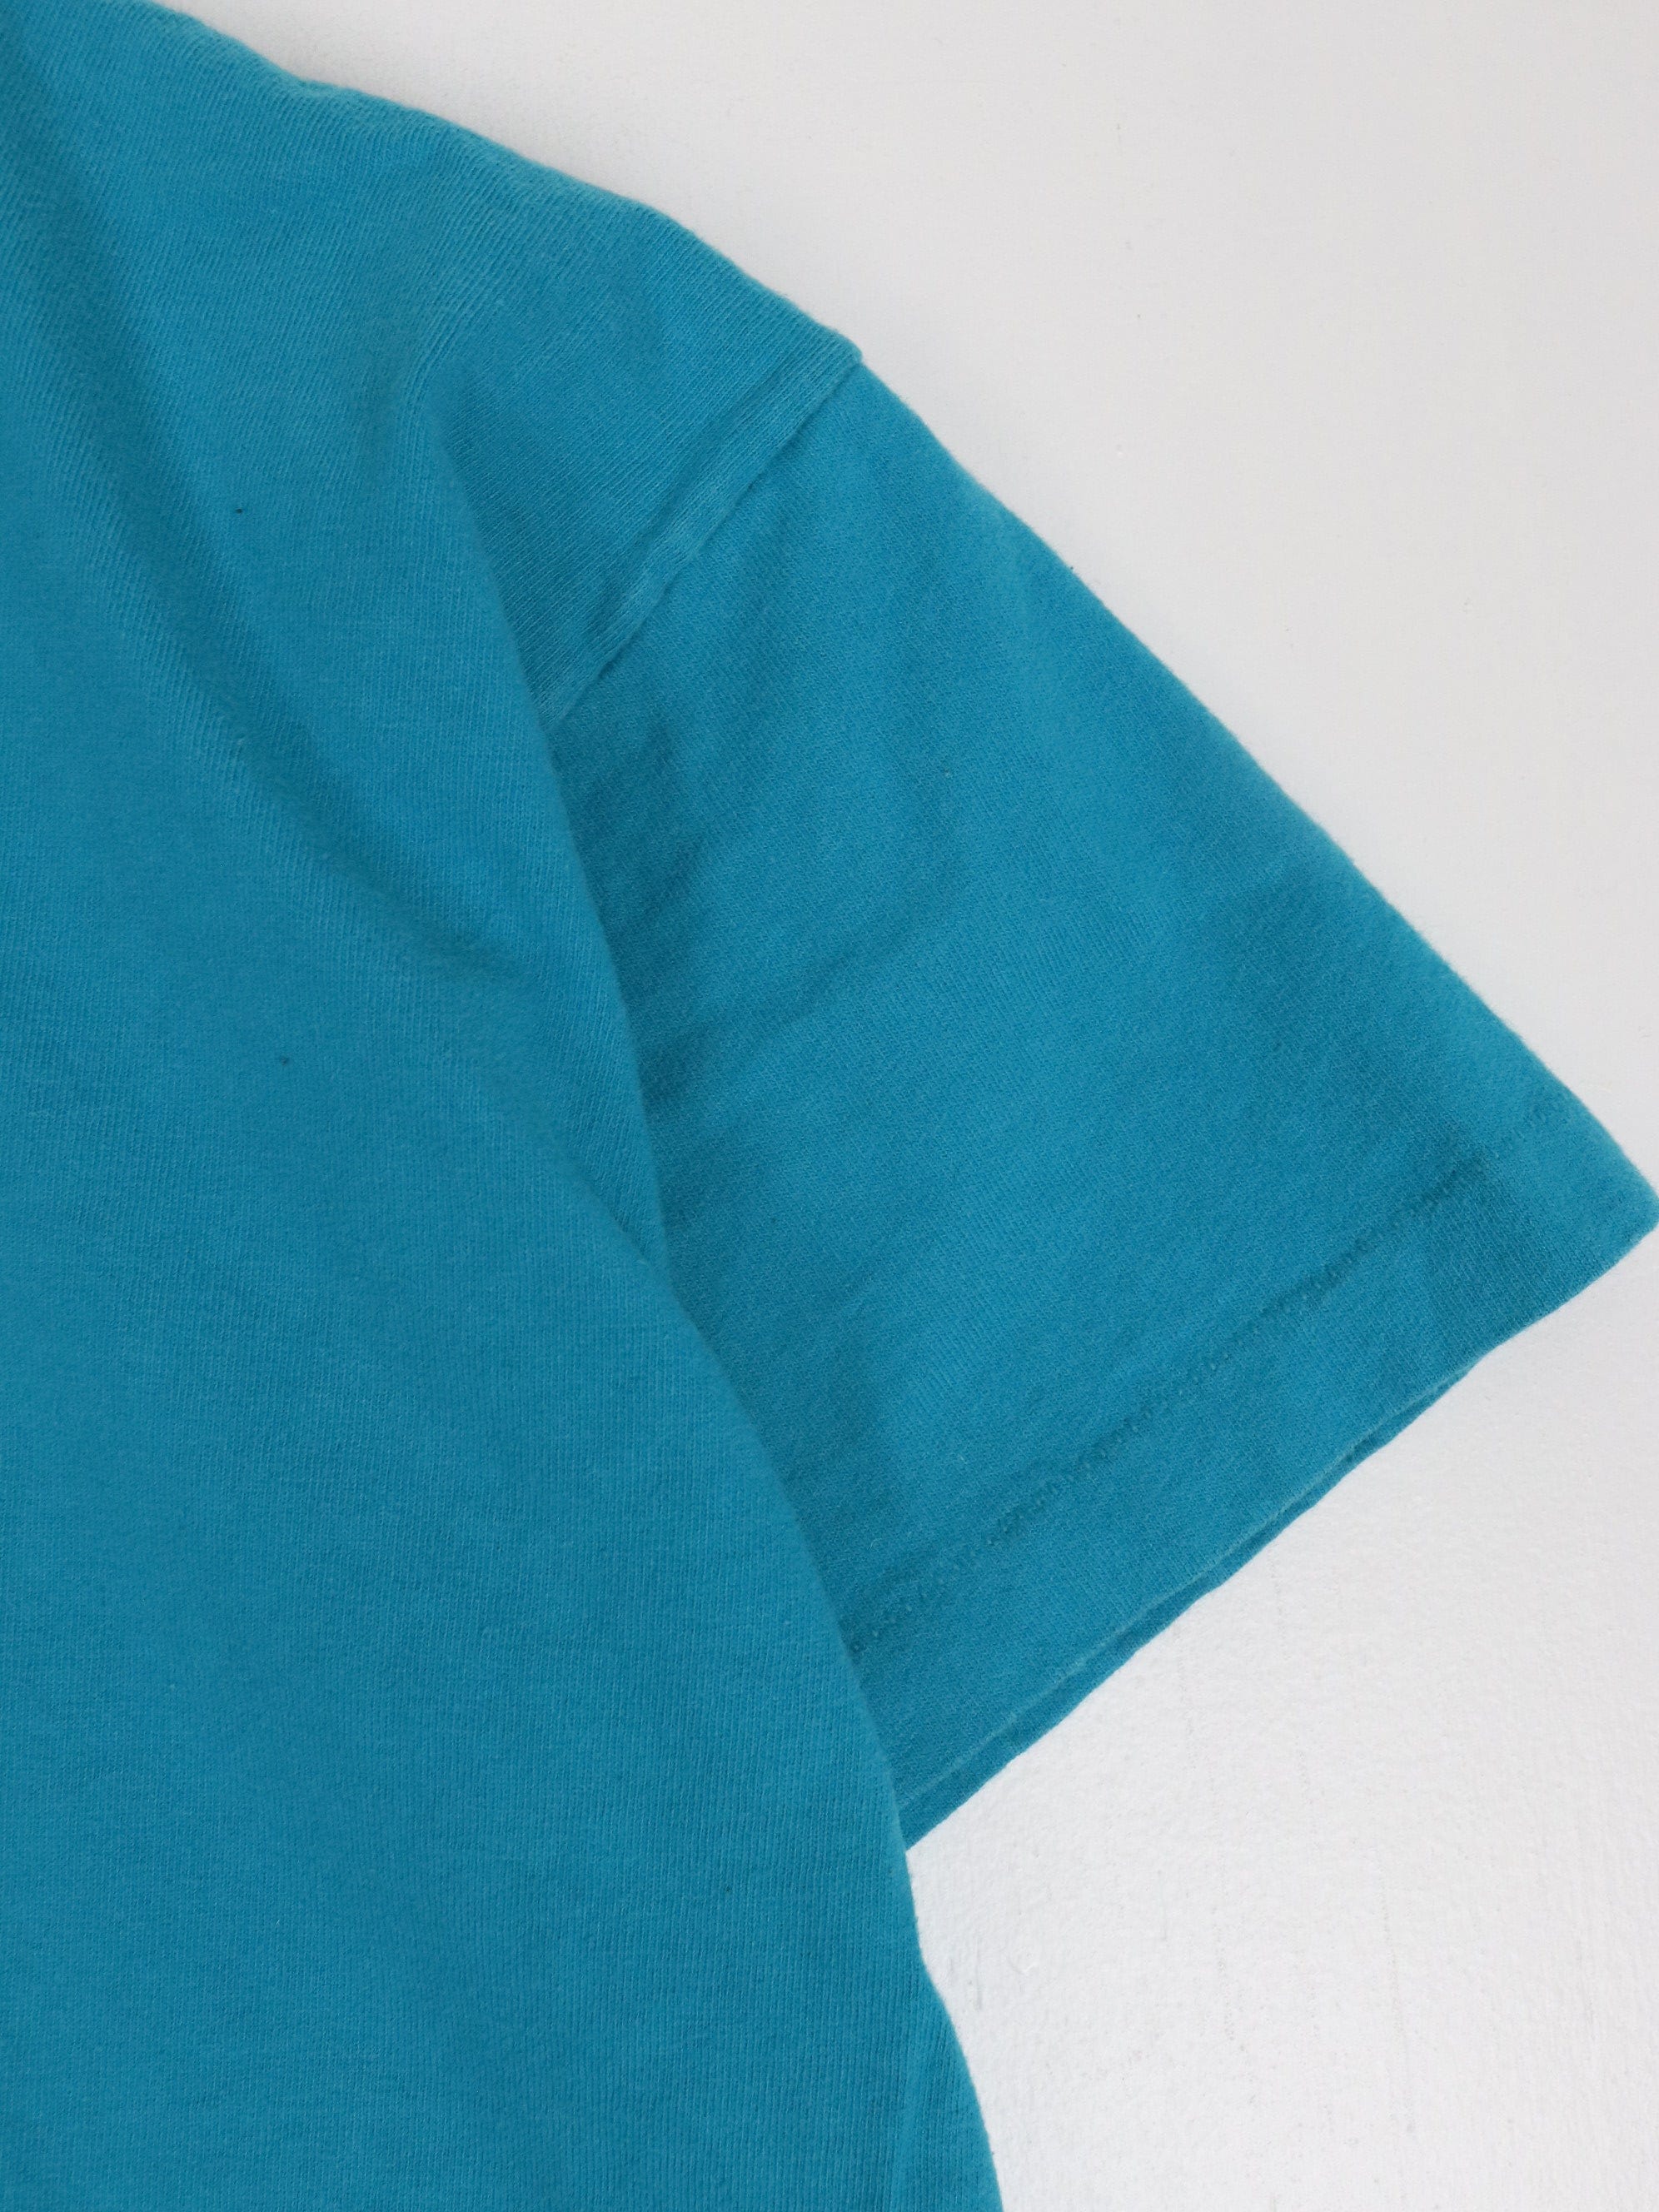 Vintage Hanes Beefy T Shirt Fits Mens Large Blue Blank Pocket 90s